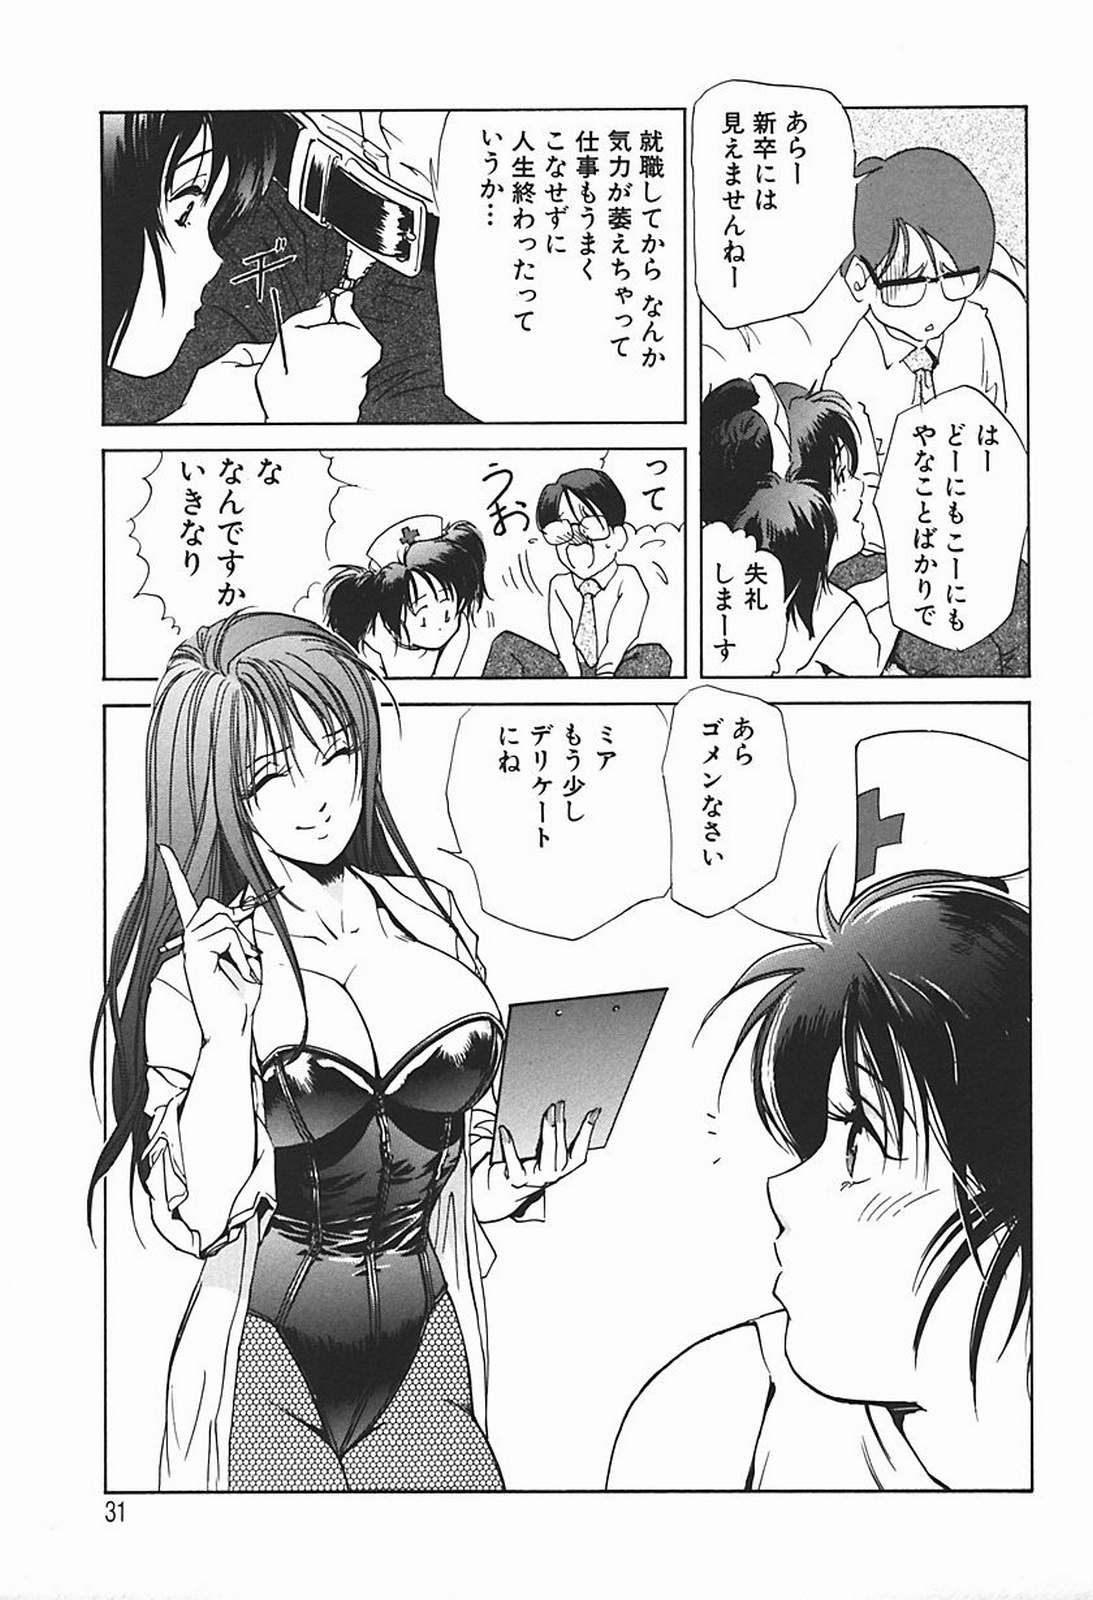 [Misaki Yukihiro] Body Therapy page 36 full